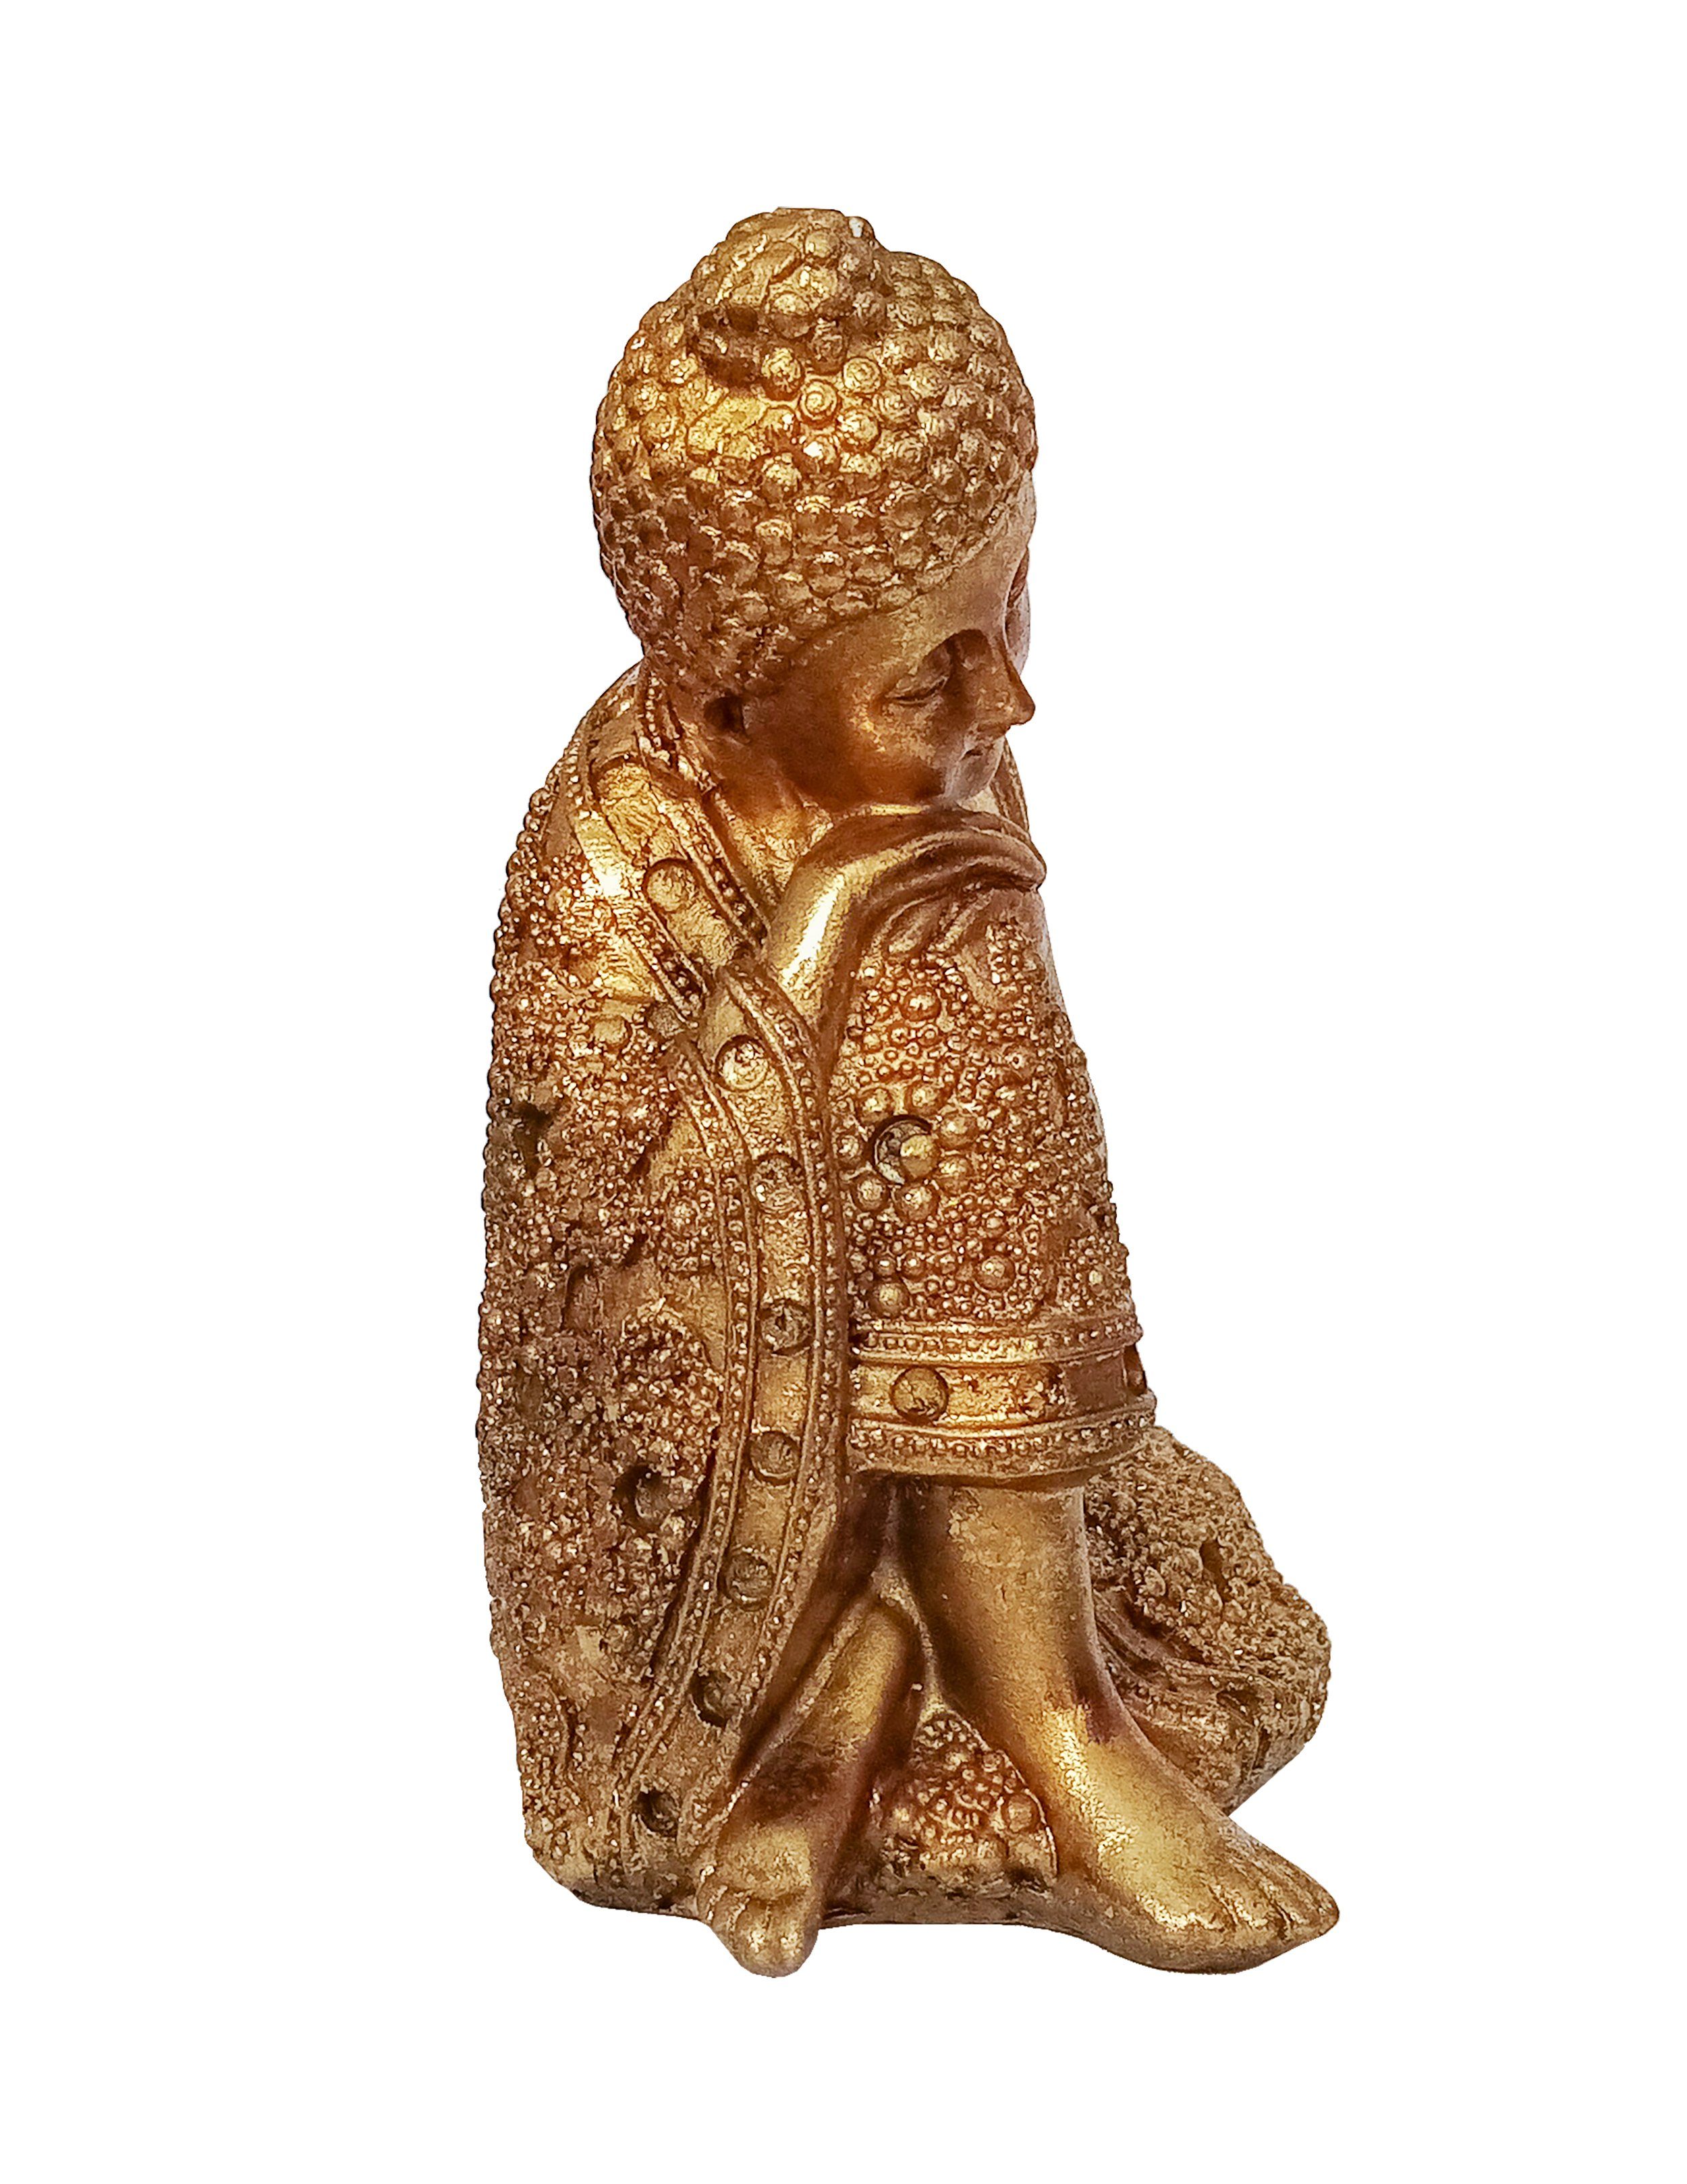 Giftdecor Buddhafigur Buddha Figur 12x16cm Shui Knie), Budda Garten Knie 91 Auf Deko Statue Polyresin aus Decoration Feng rechtes Thai (auf Gold